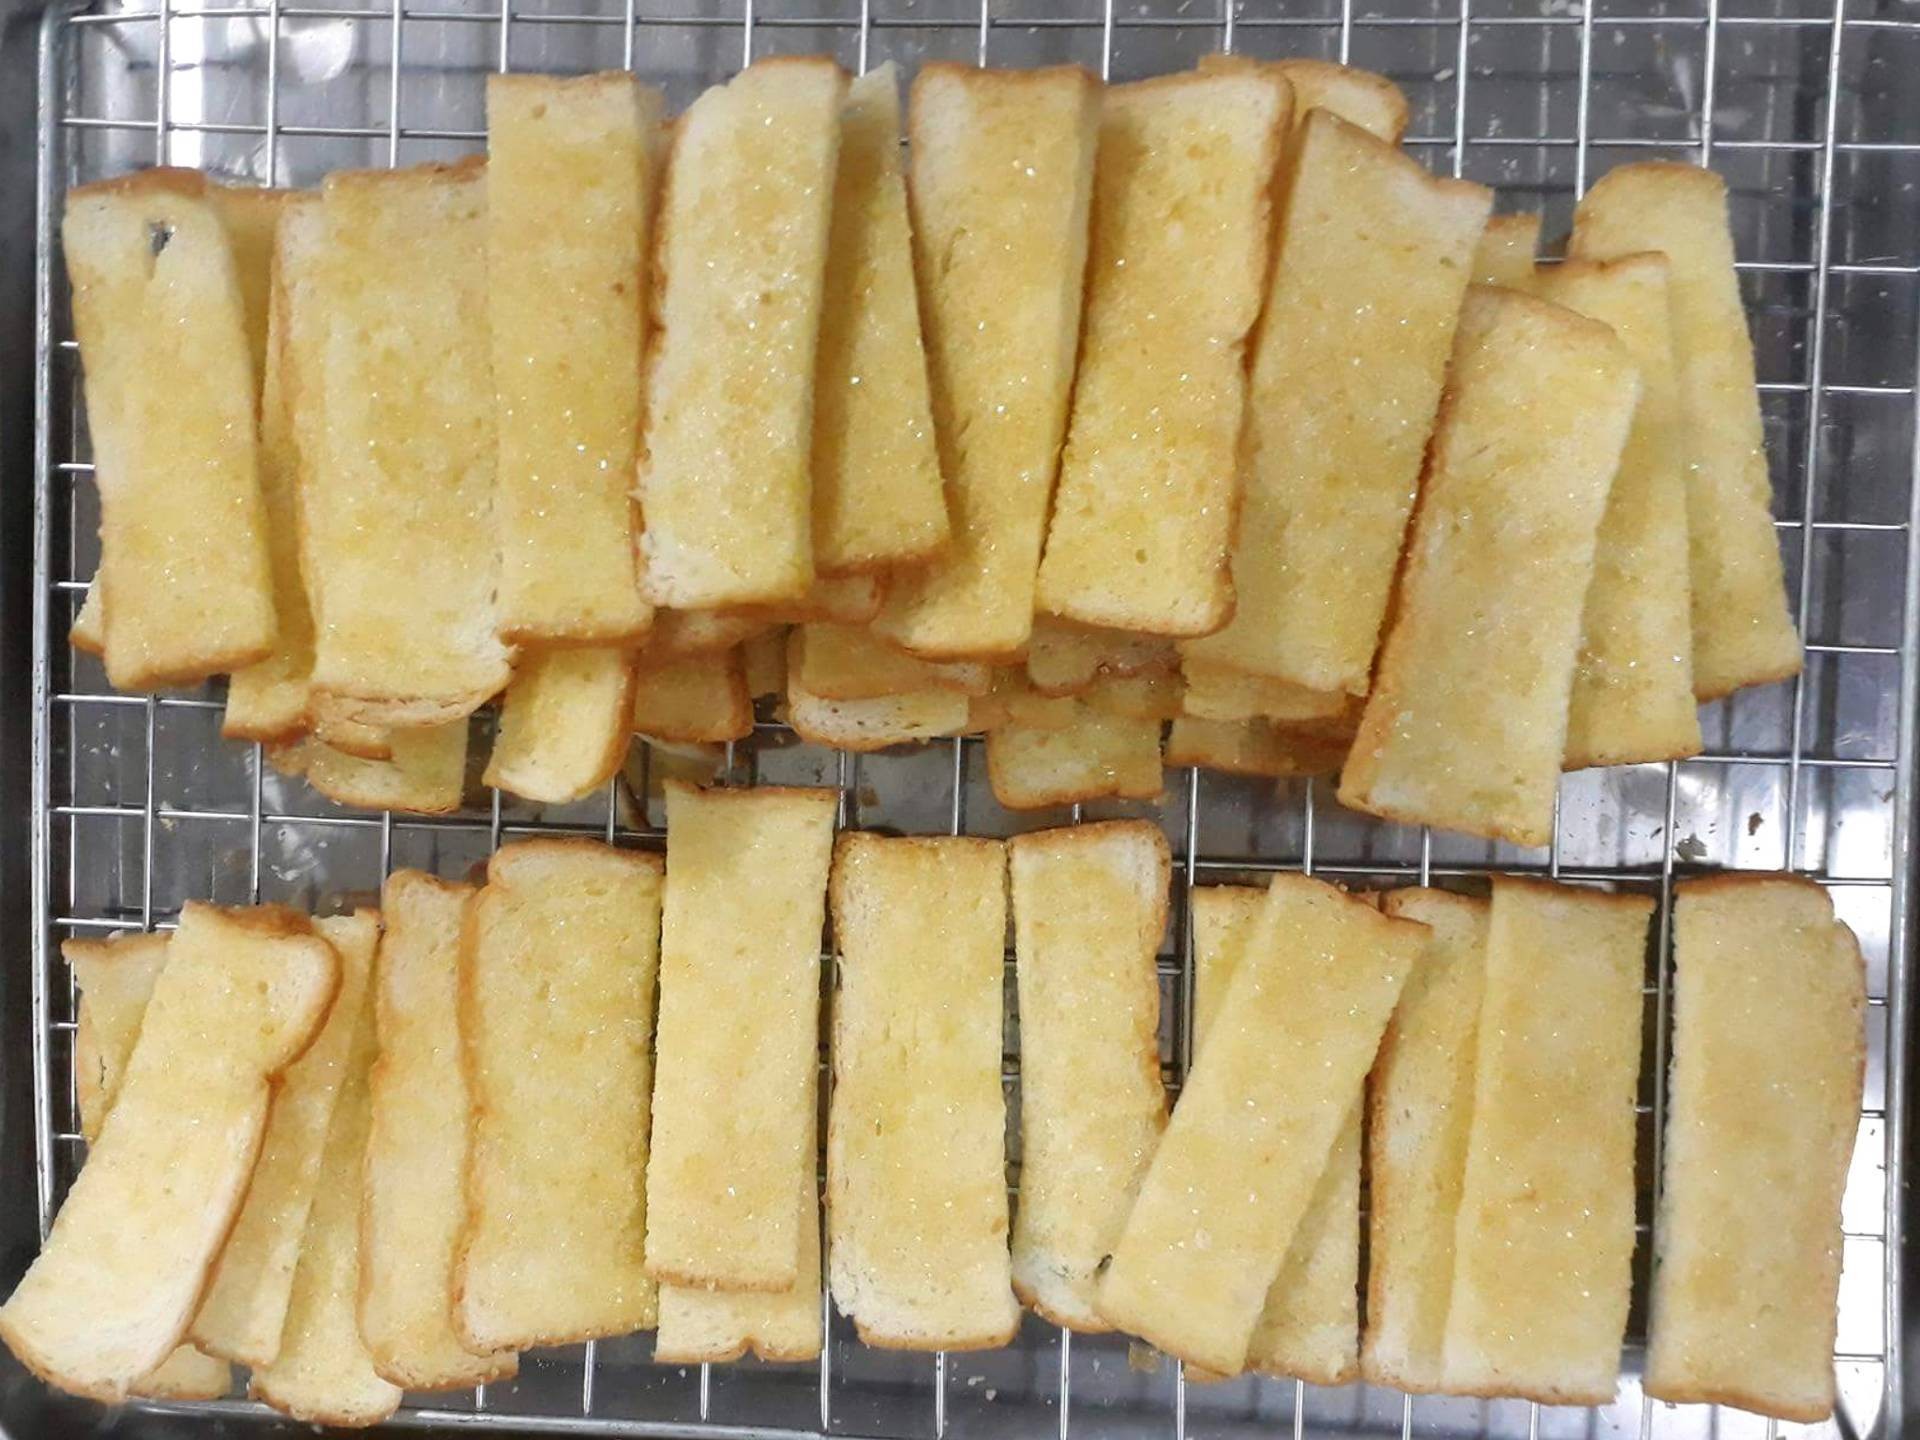 สูตร ขนมปังกรอบเนยน้ำตาล 🍞 พร้อมวิธีทำโดย AomAmmTaLonGin